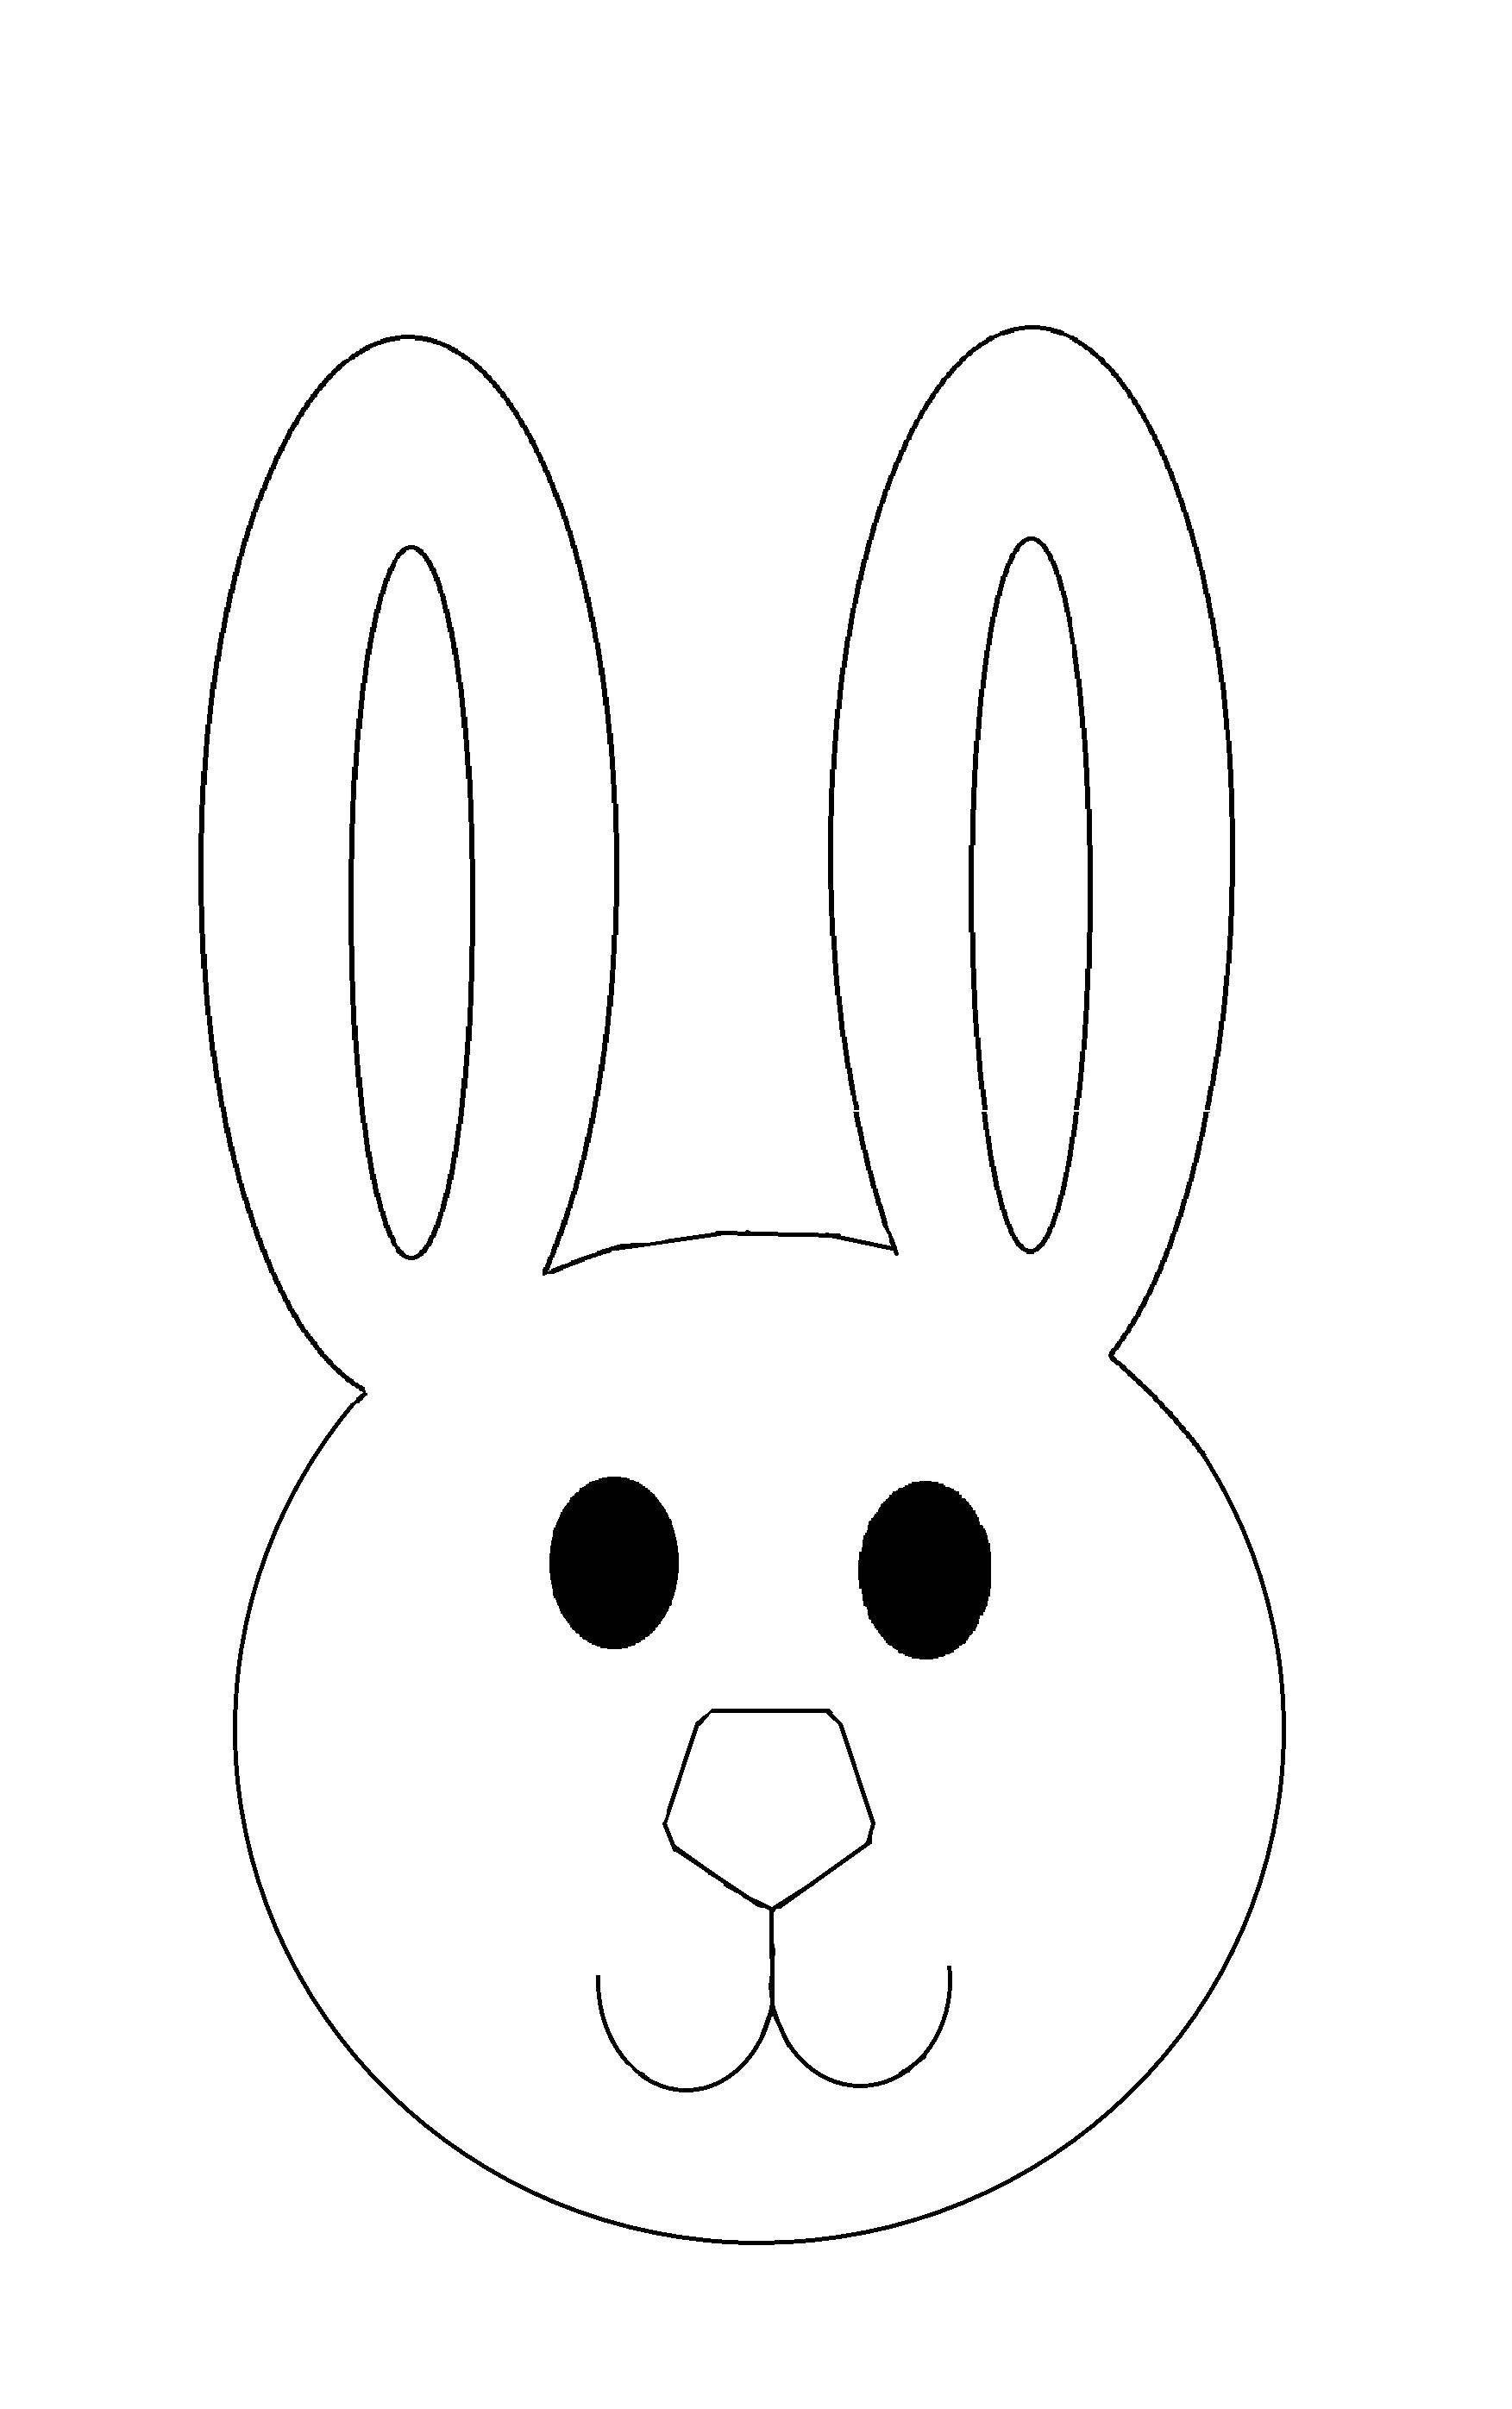 Название: Раскраска Контур головы кролика. Категория: Контур зайца для вырезания. Теги: контур, колик, голова, ушки.